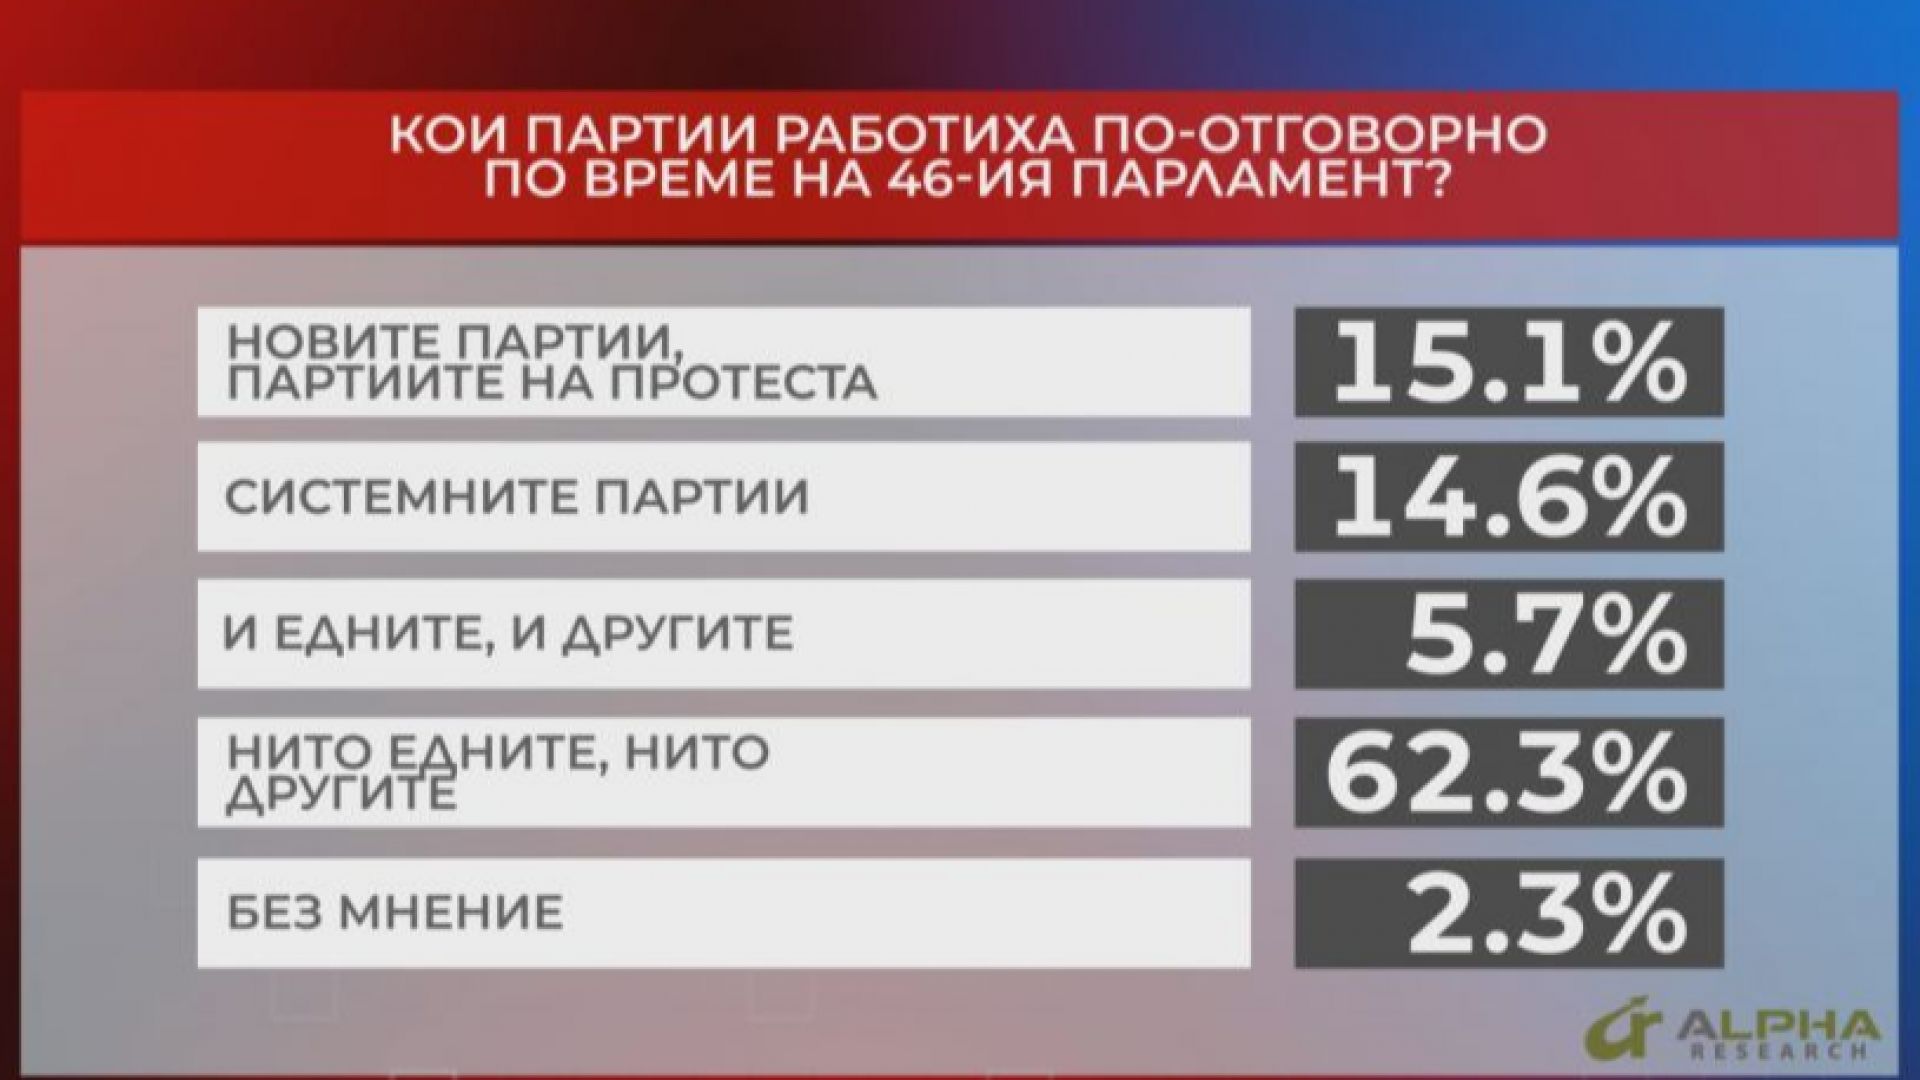 Мнението за 46-ия парламент: 62,3% не са доволни от работата и на новите, и на старите партии